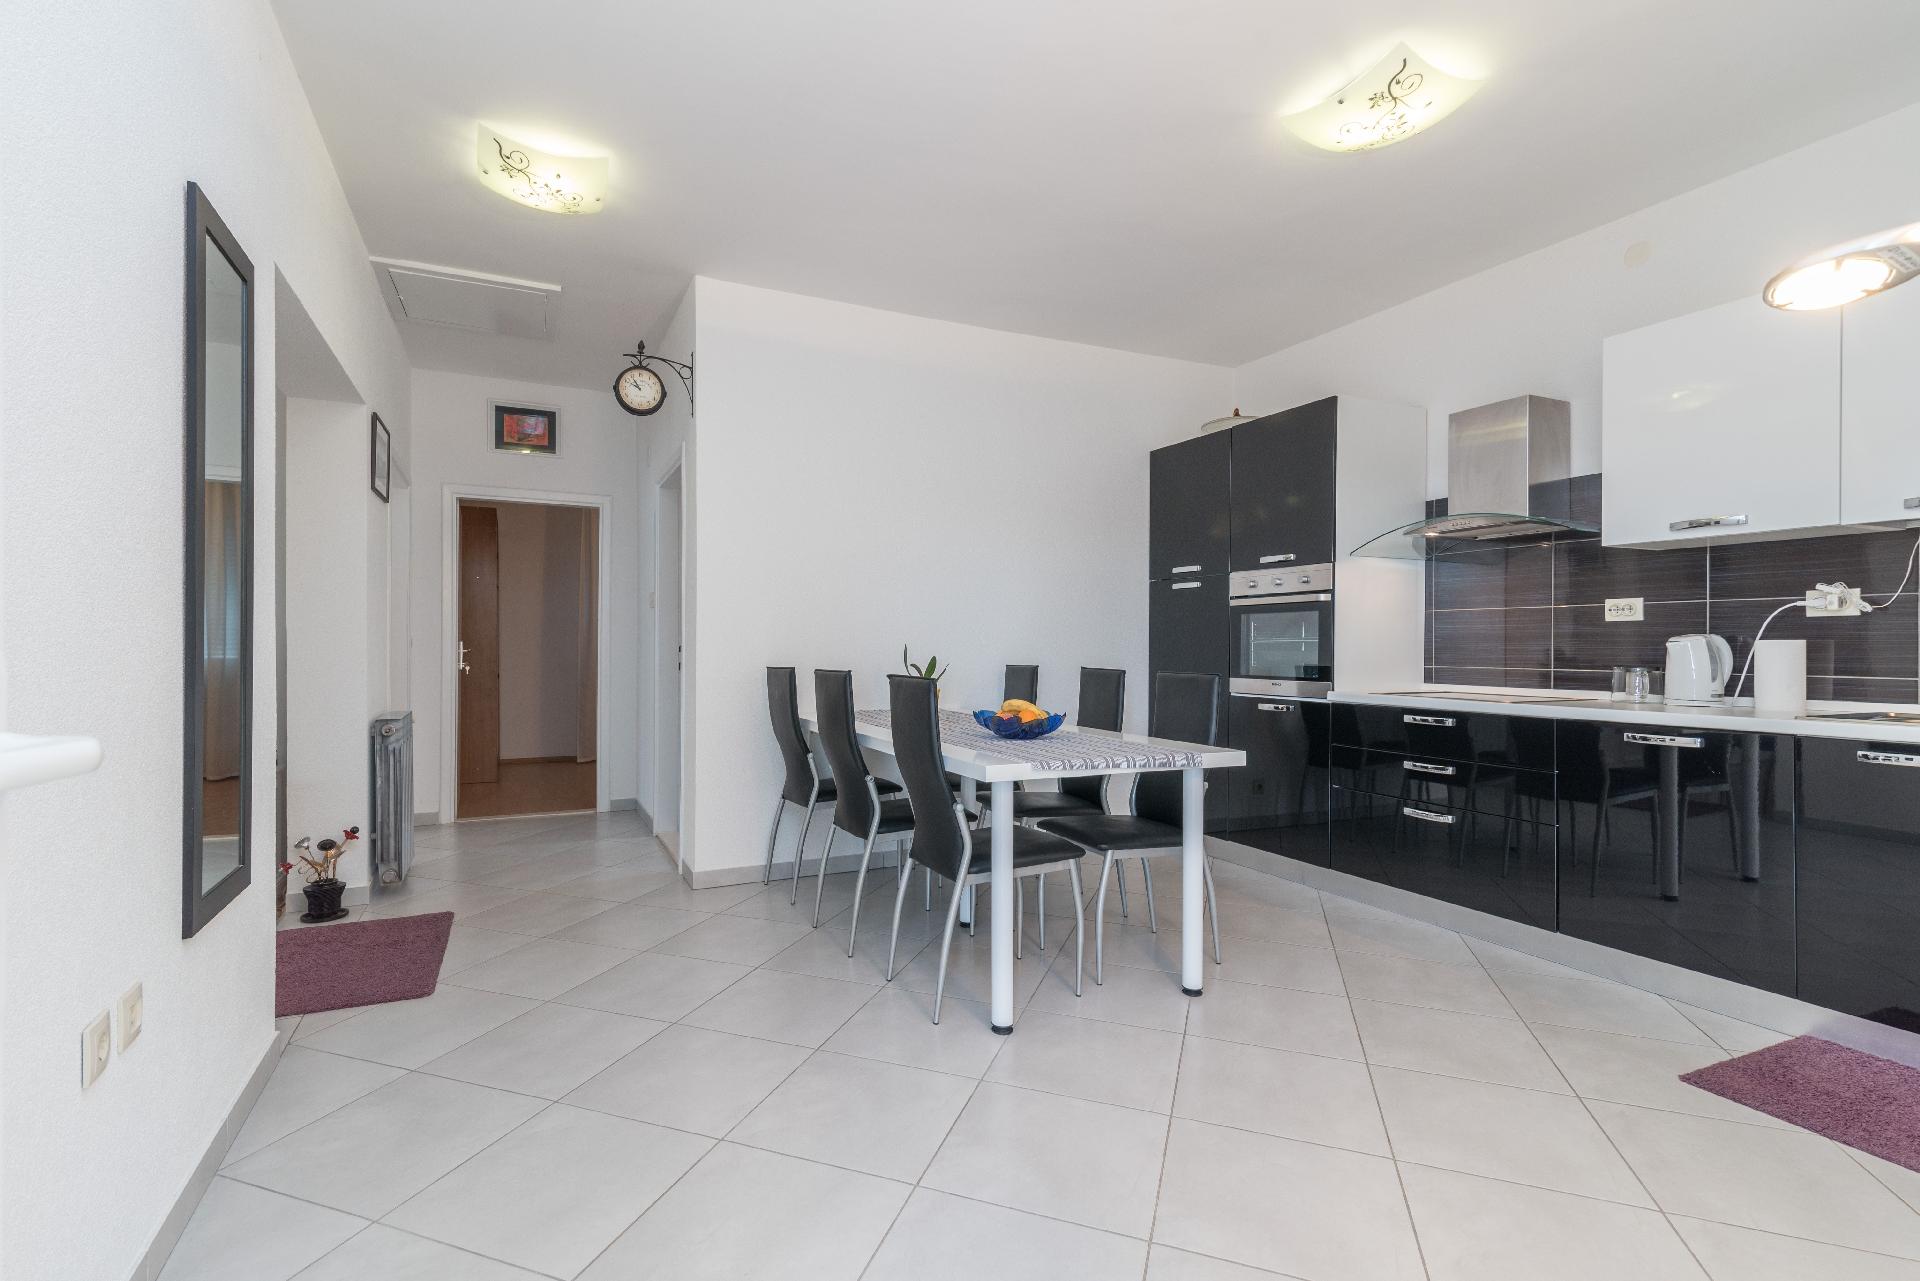 Ferienwohnung für 5 Personen ca. 78 m² i Ferienwohnung in Dalmatien